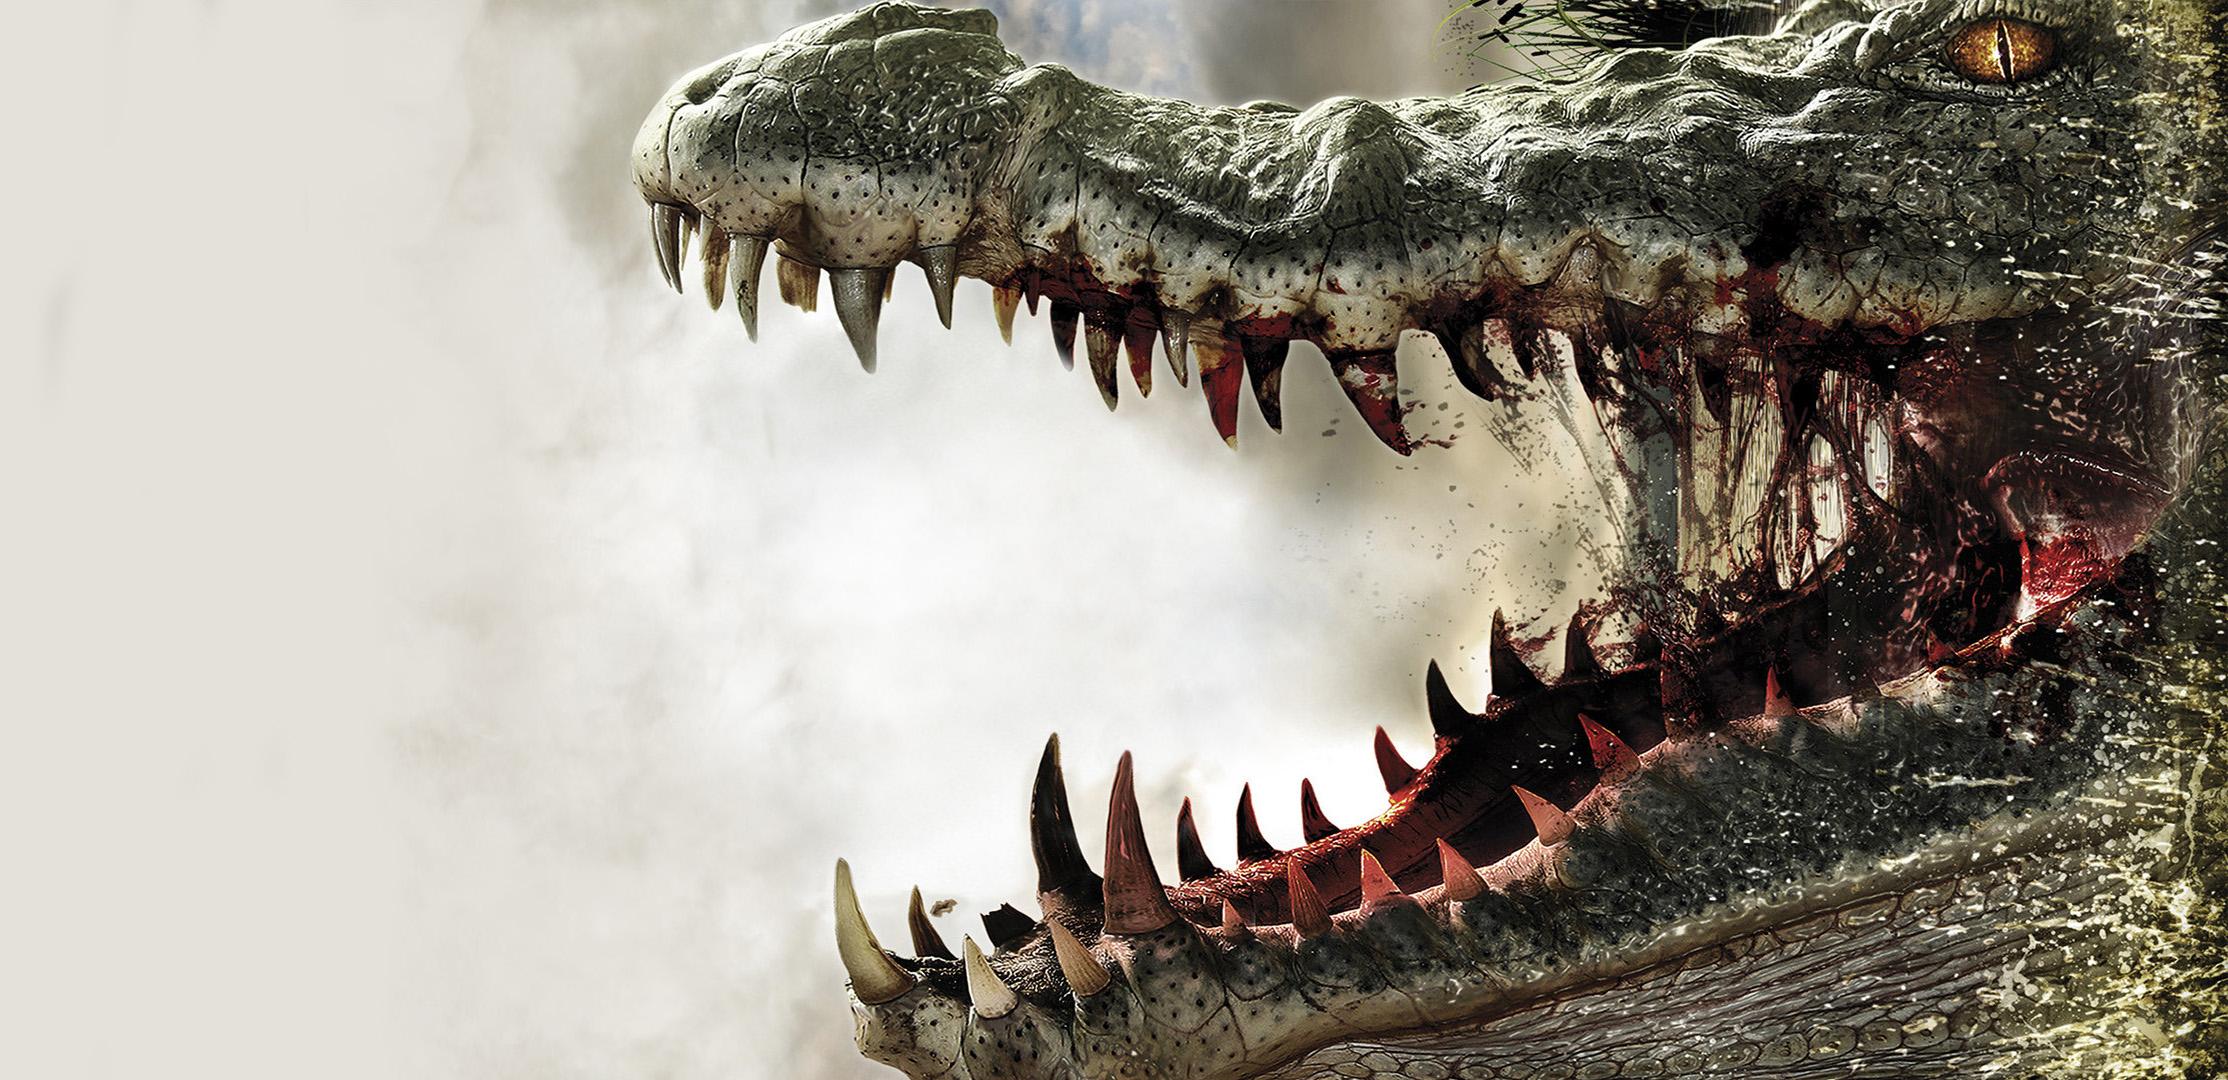 100 Alligator Pictures  Download Free Images on Unsplash